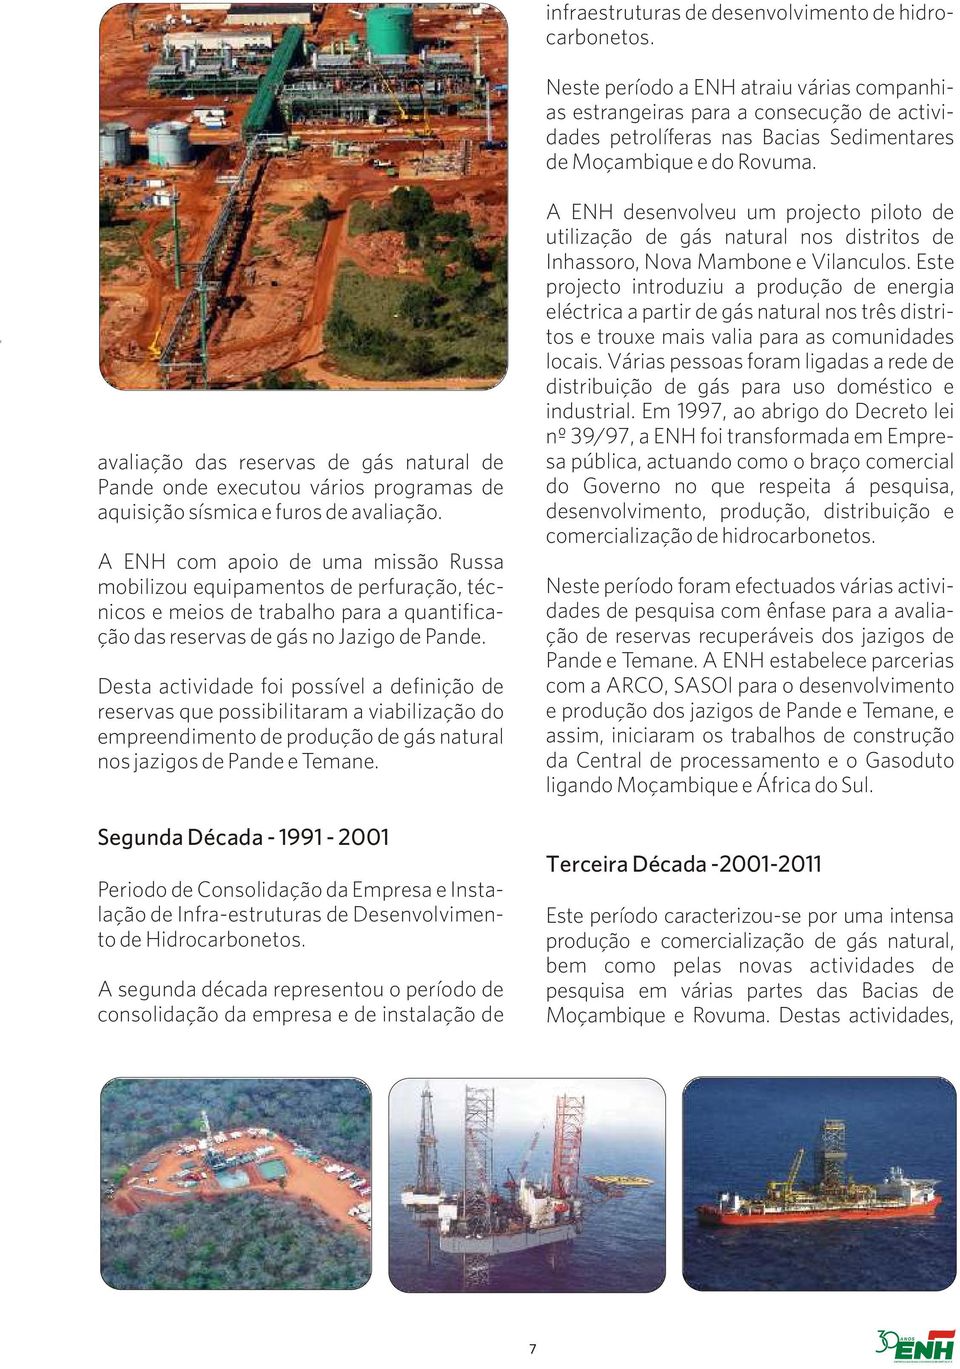 avaliação das reservas de gás natural de Pande onde executou vários programas de aquisição sísmica e furos de avaliação.